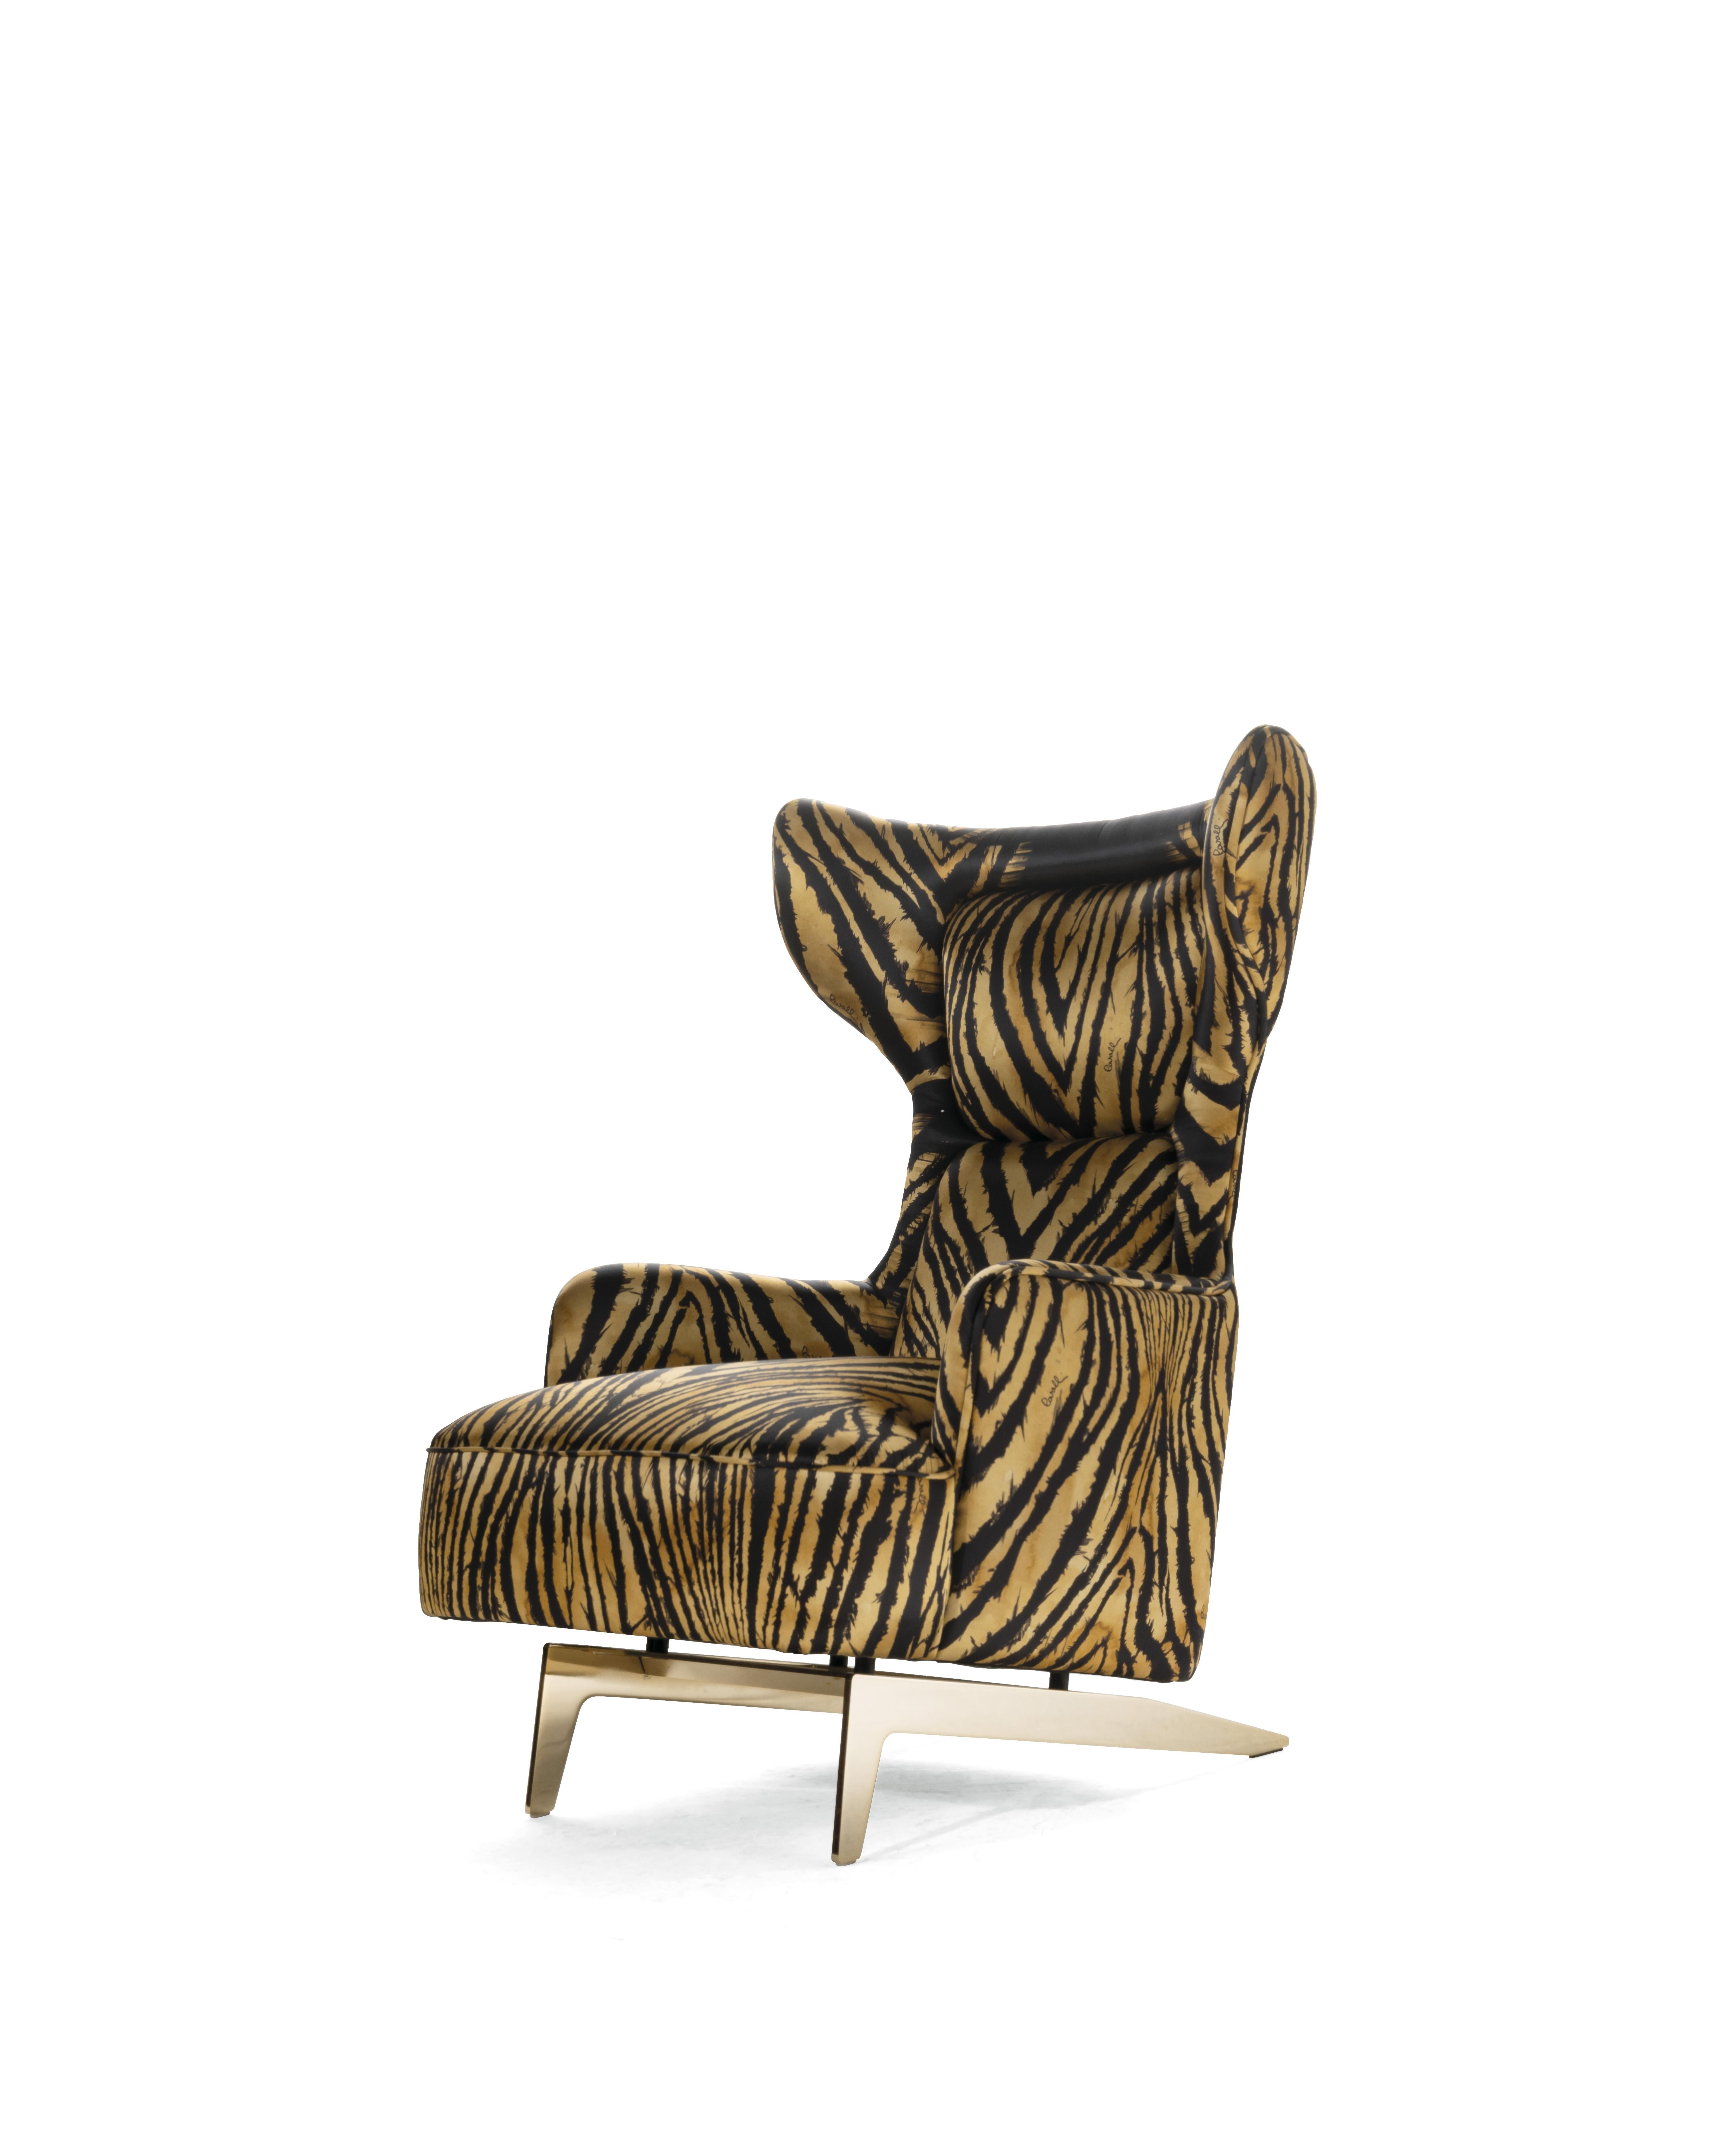 Captivant et impressionnant, le fauteuil Guam, qui fait référence aux années 1950 et 1960, présente une forme enchanteresse et enveloppante, avec un fort impact scénographique. Proposé dans différents tissus de la collection, dont la nouvelle soie